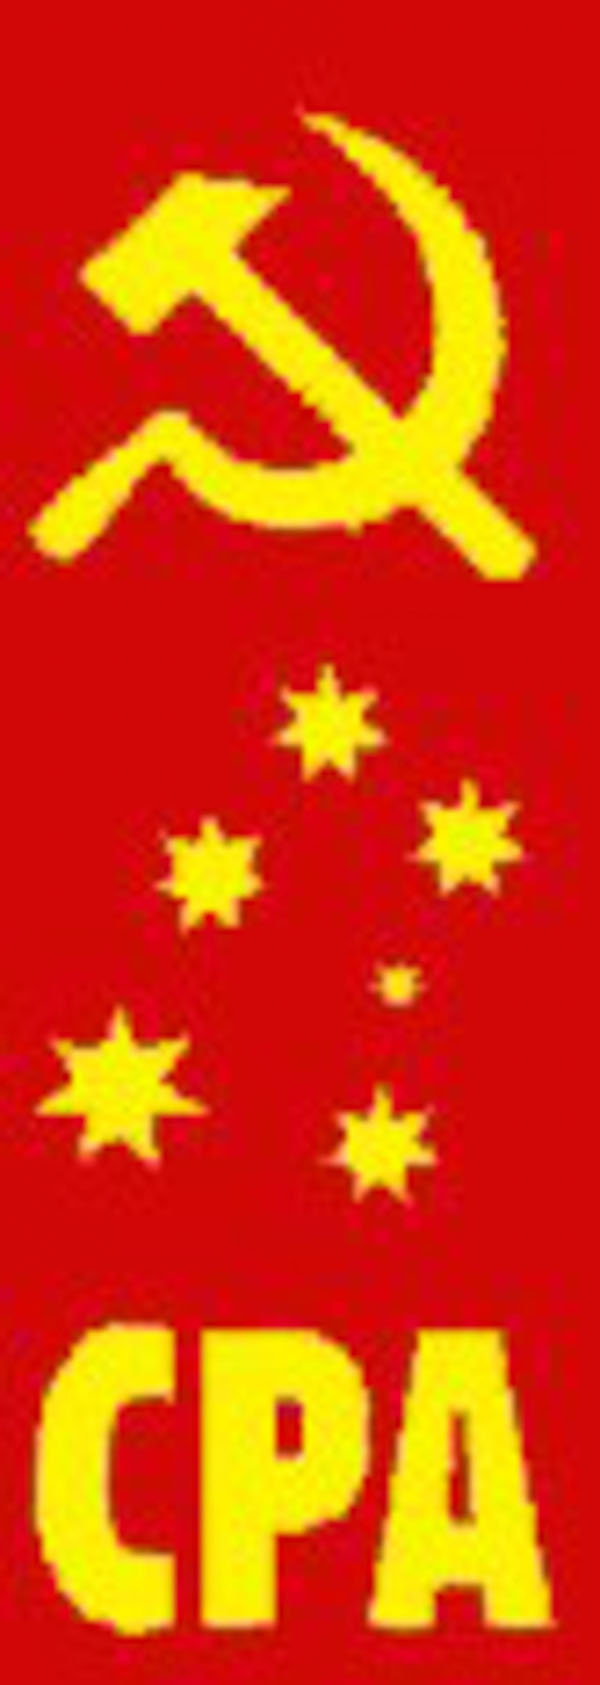 澳大利亚共产党